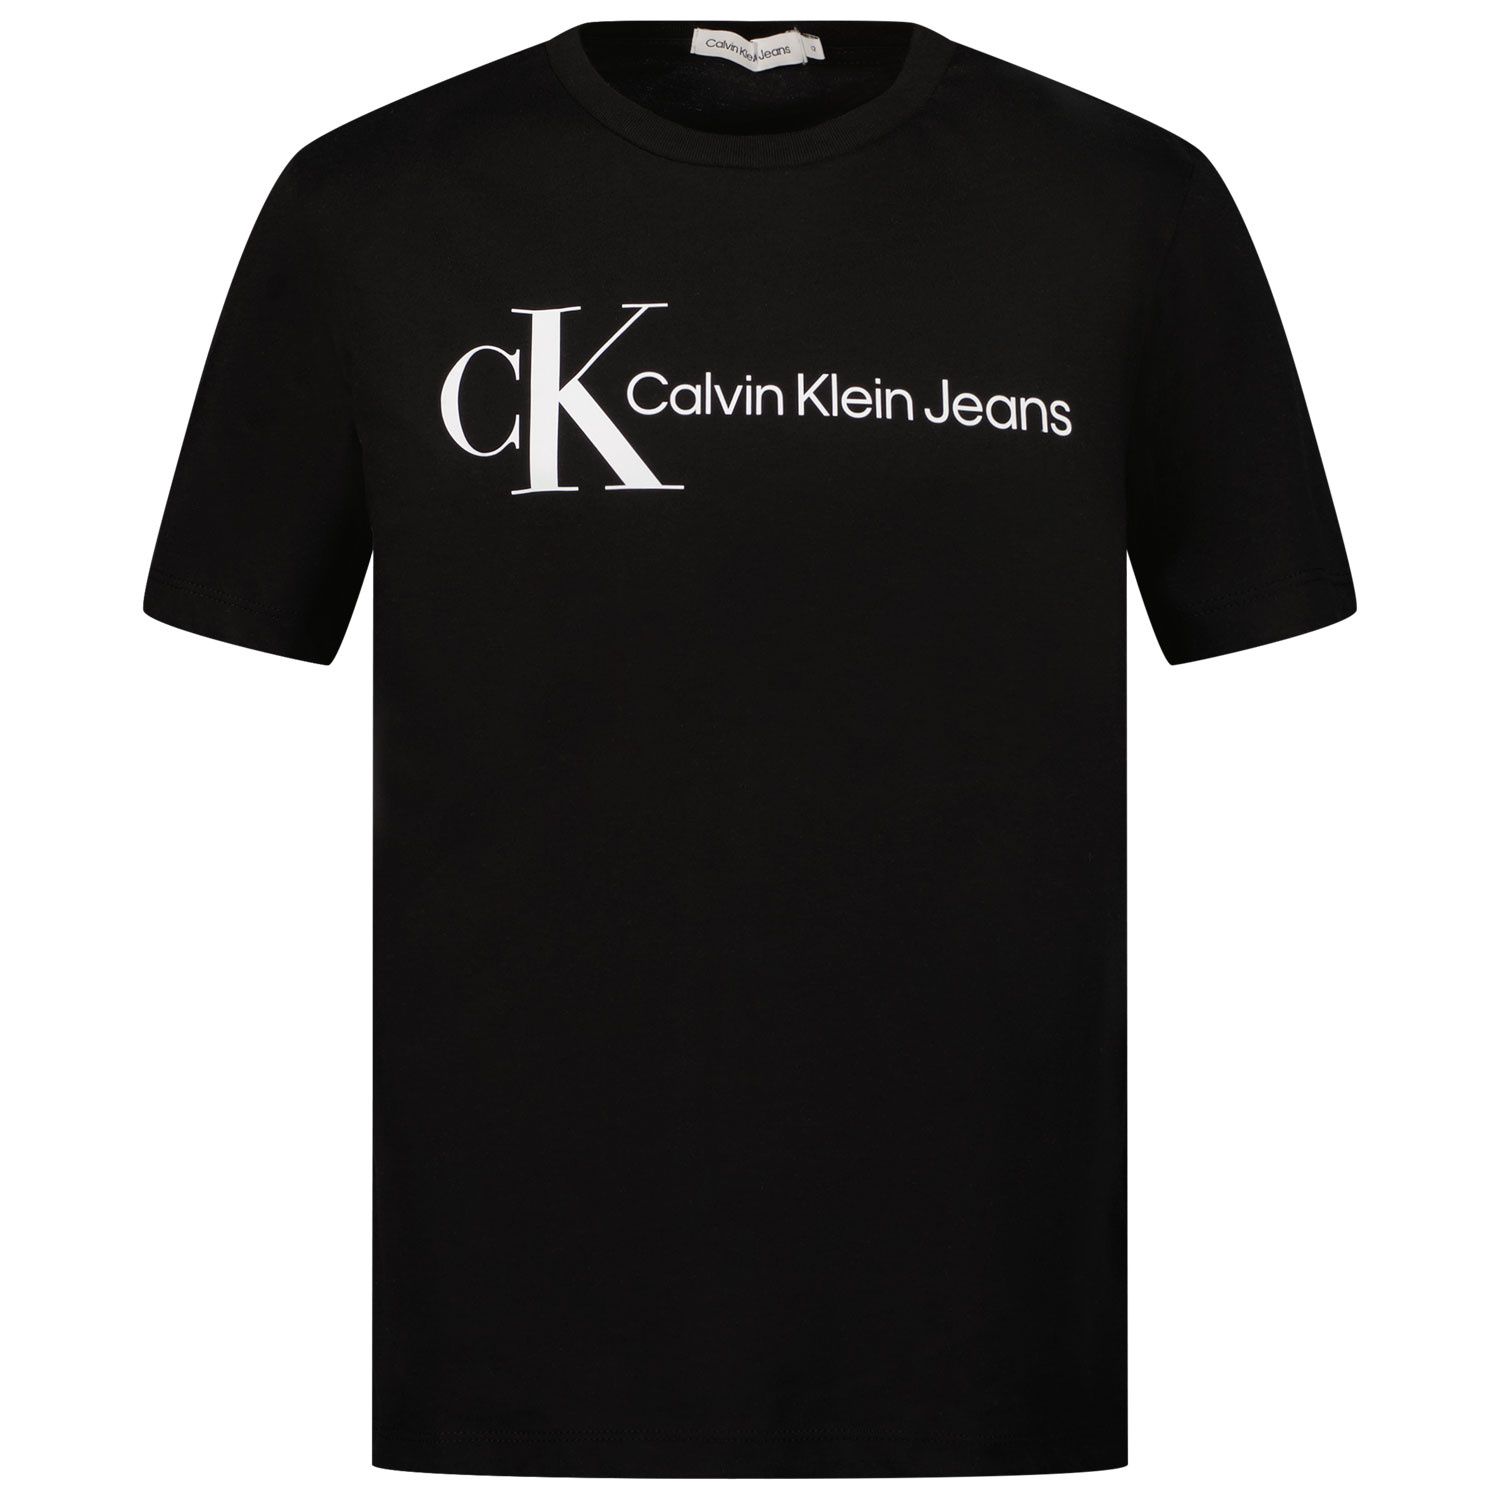 Picture of Calvin Klein IB0IB01230 kids t-shirt black